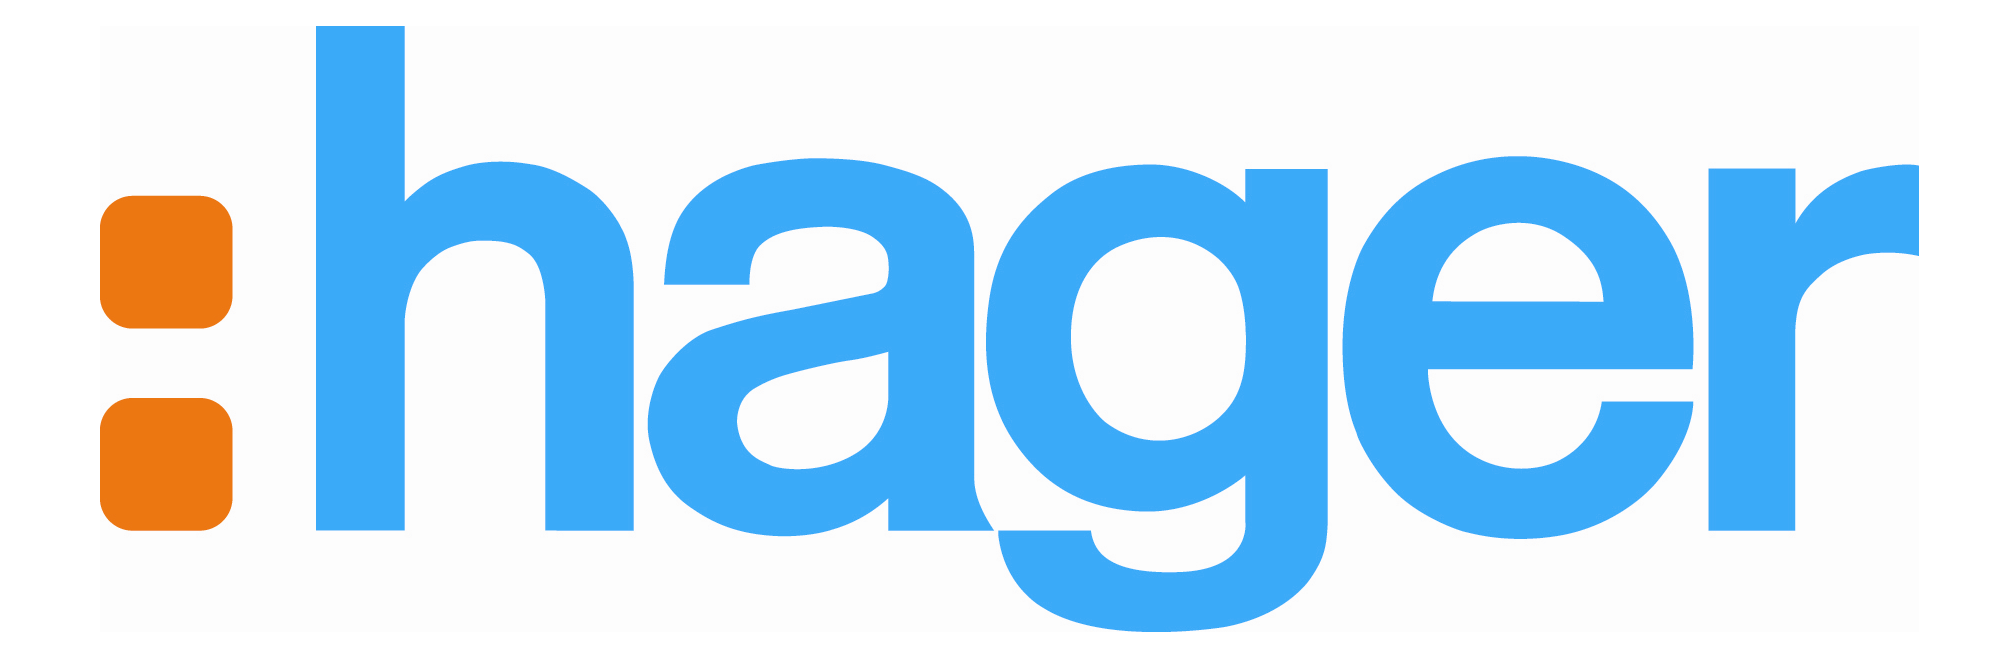 Hager_logo_logotype_emblem